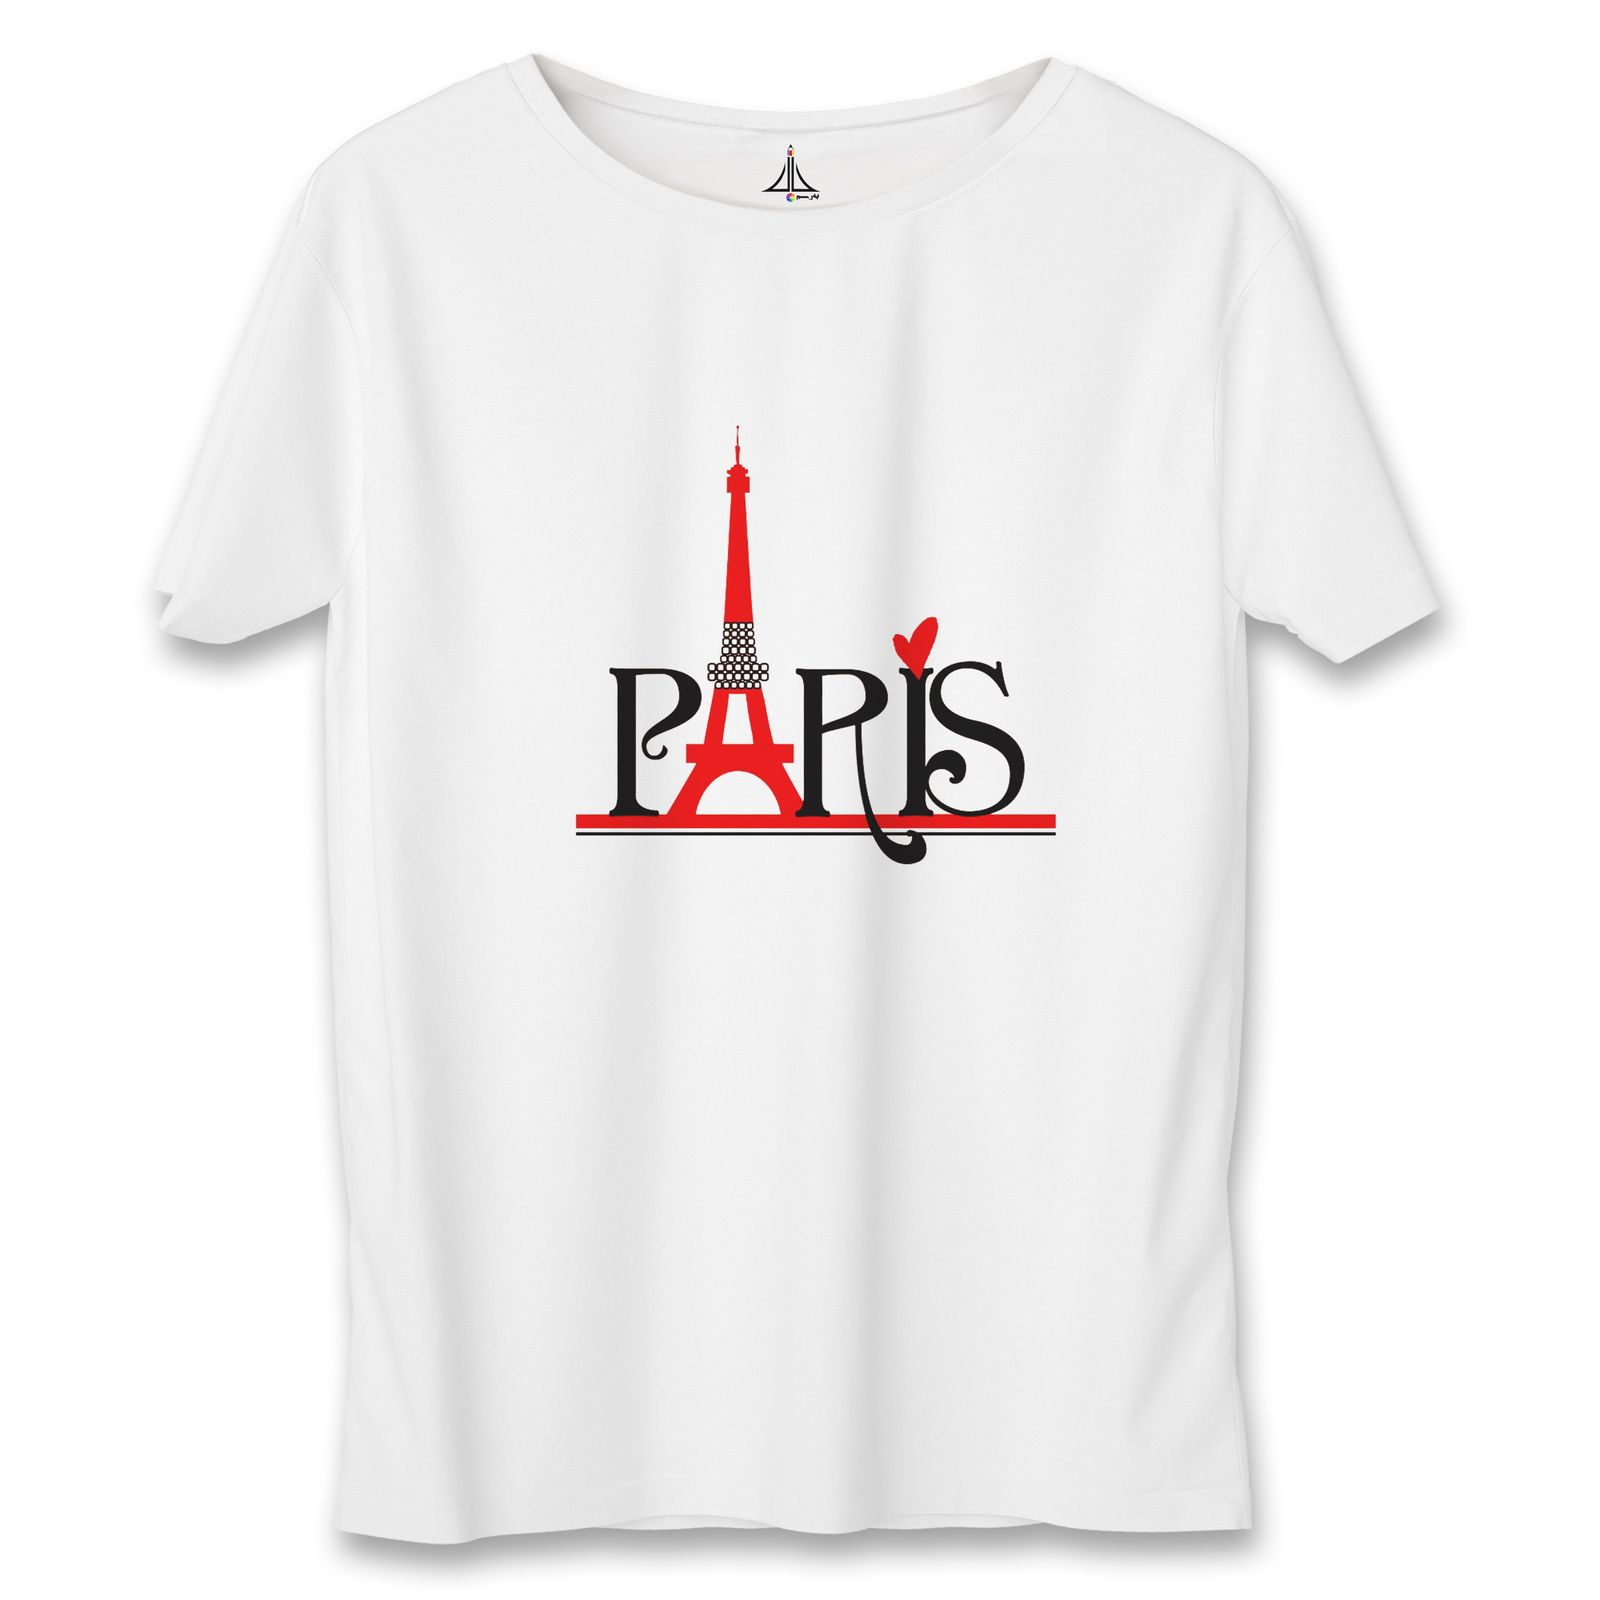 تی شرت مردانه به رسم طرح پاریس کد 3376 -  - 1